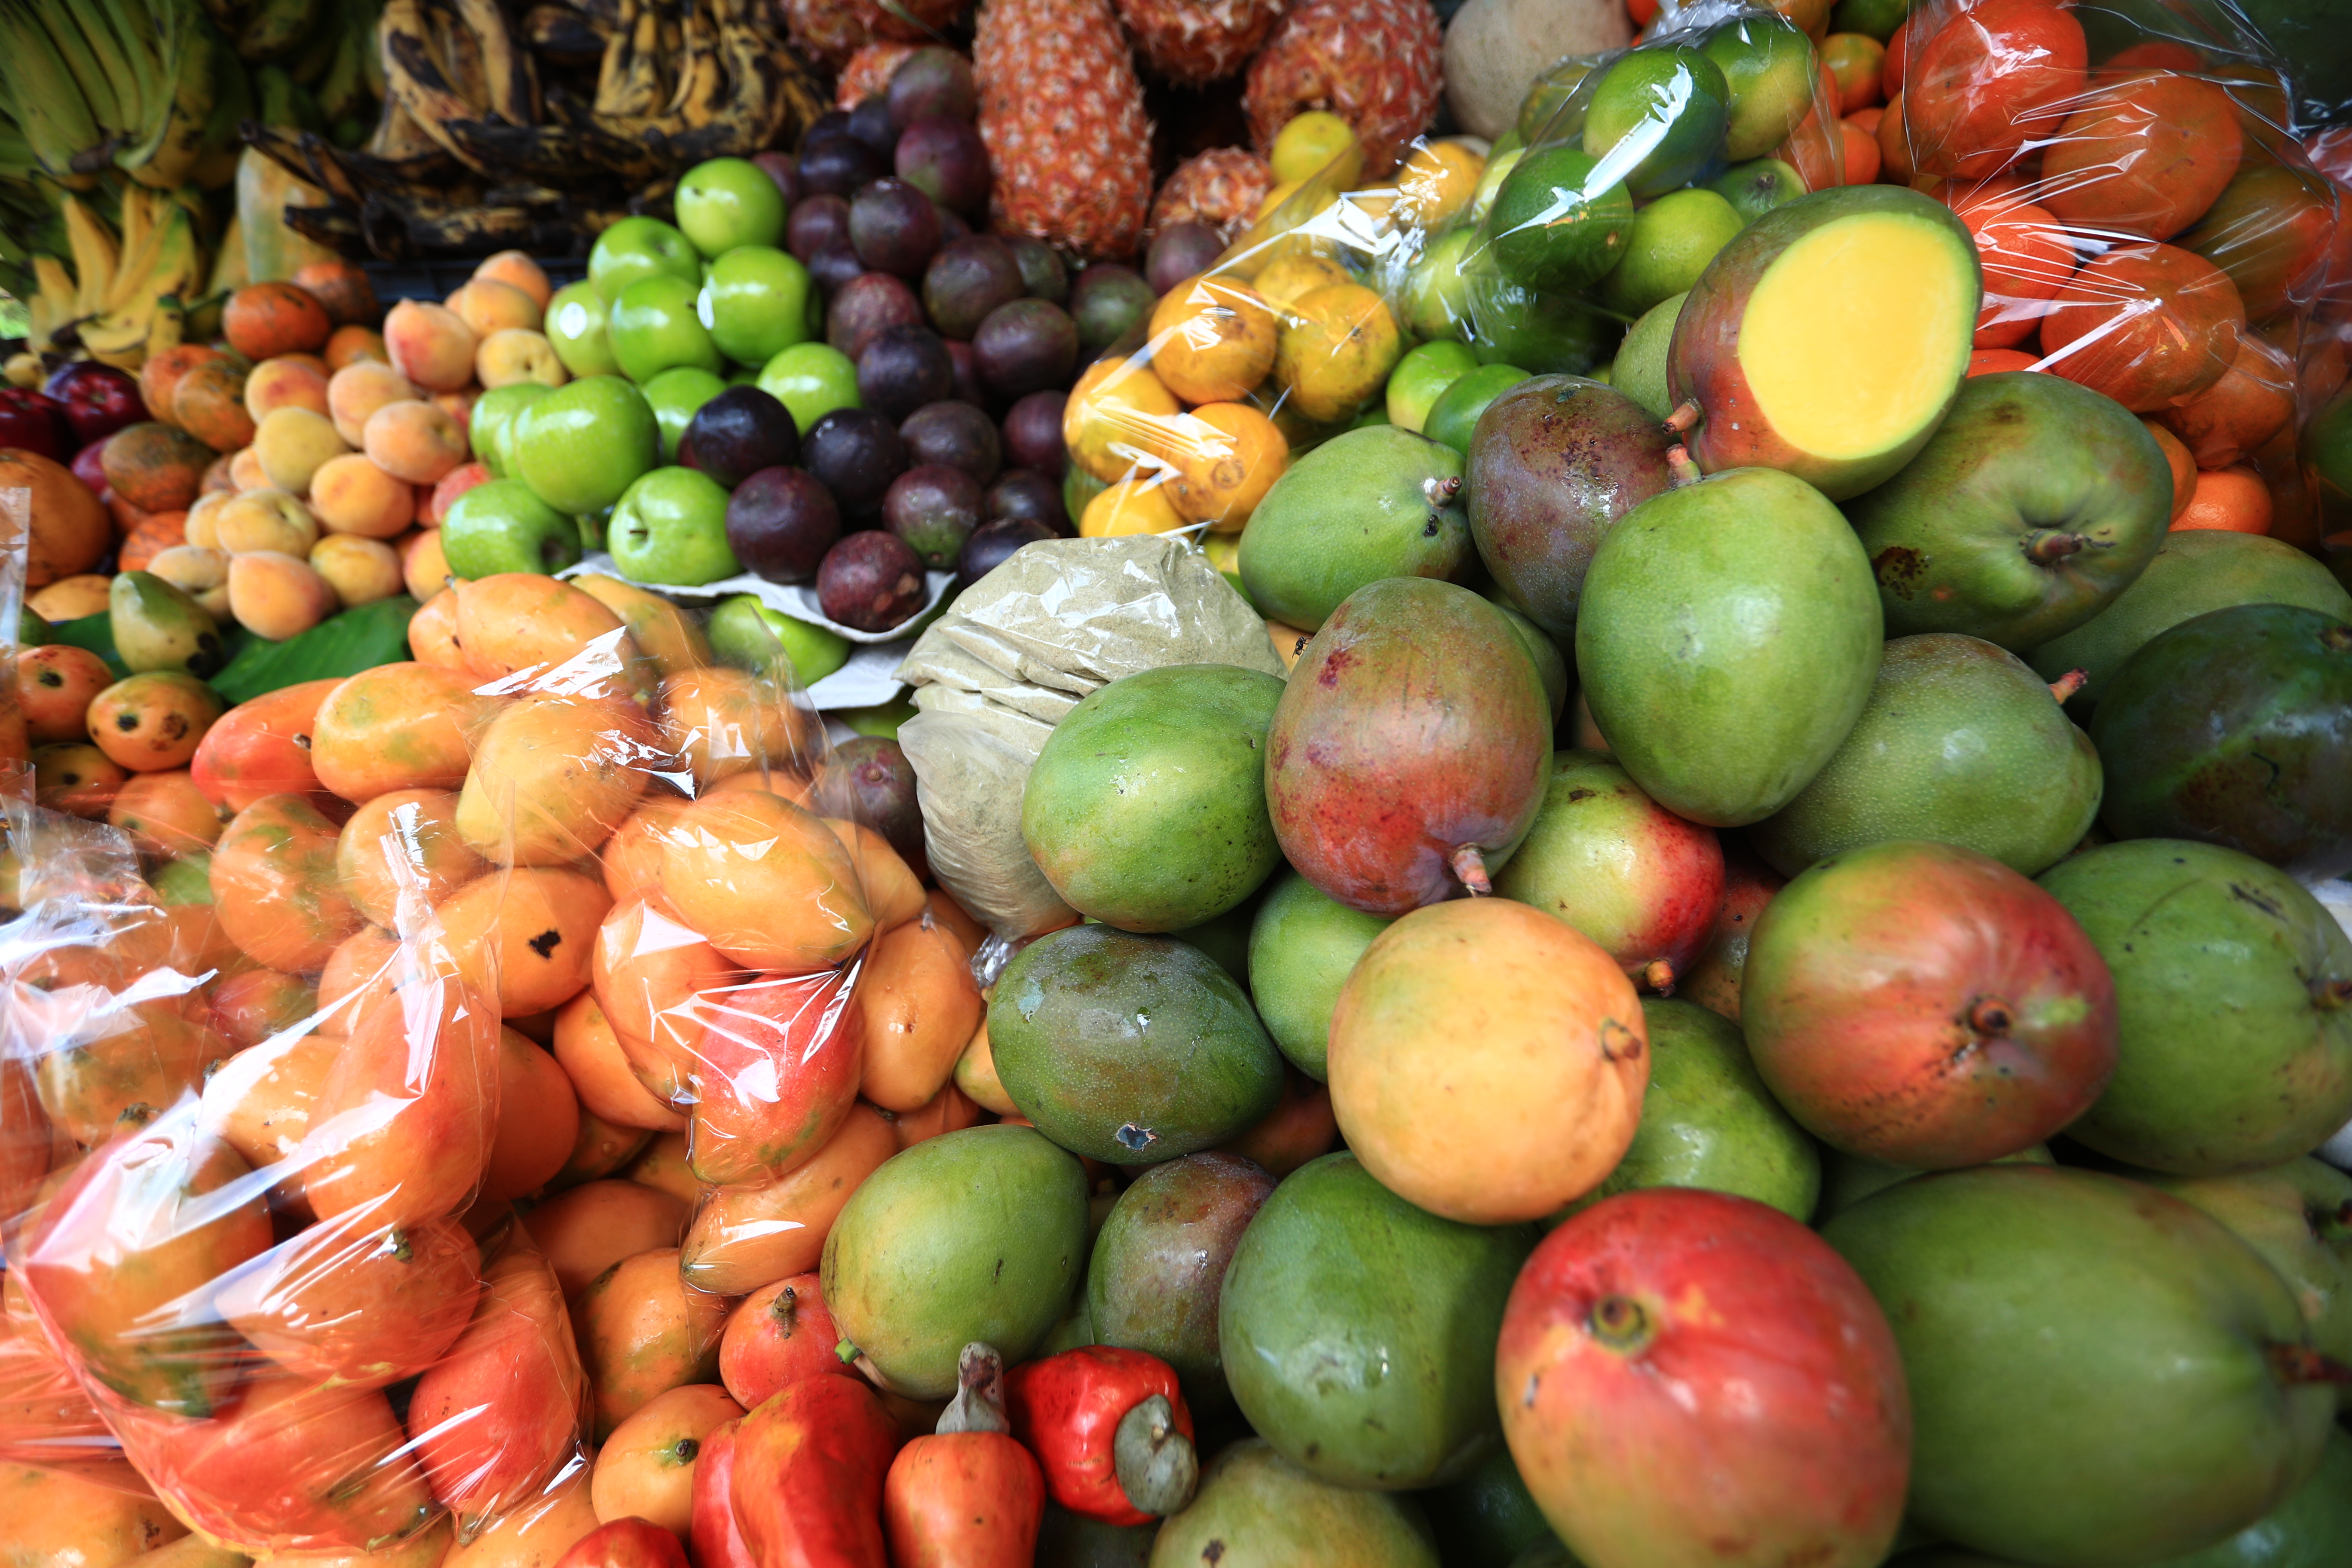 La producción de fruta tropical ingreso al mercado y los consumidores buscan su frescura para aliviar el calor e hidratarse. (Foto Prensa Libre: Carlos Hernández Ovalle)    